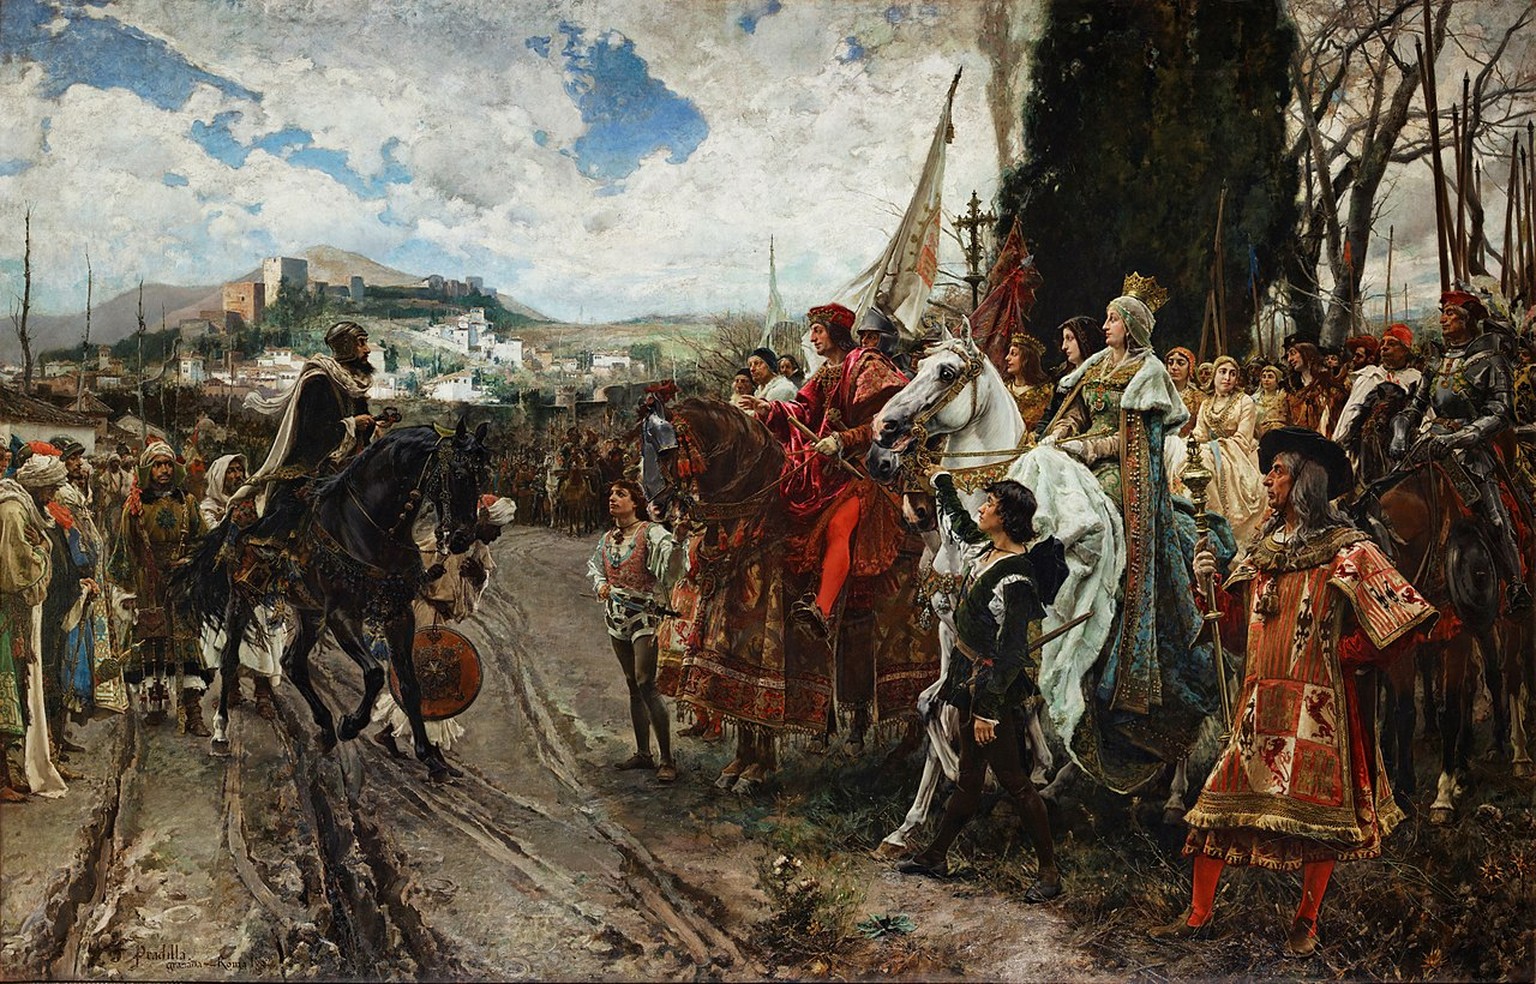 Der Emir von Granada, Muhammad XII (genannt Boabdil), kapituliert vor Ferdinand und Isabella, 1492. Das ist das Ende von al-Andalus. Hier lebten Muslime, Christen und Juden über manche Strecken friedl ...